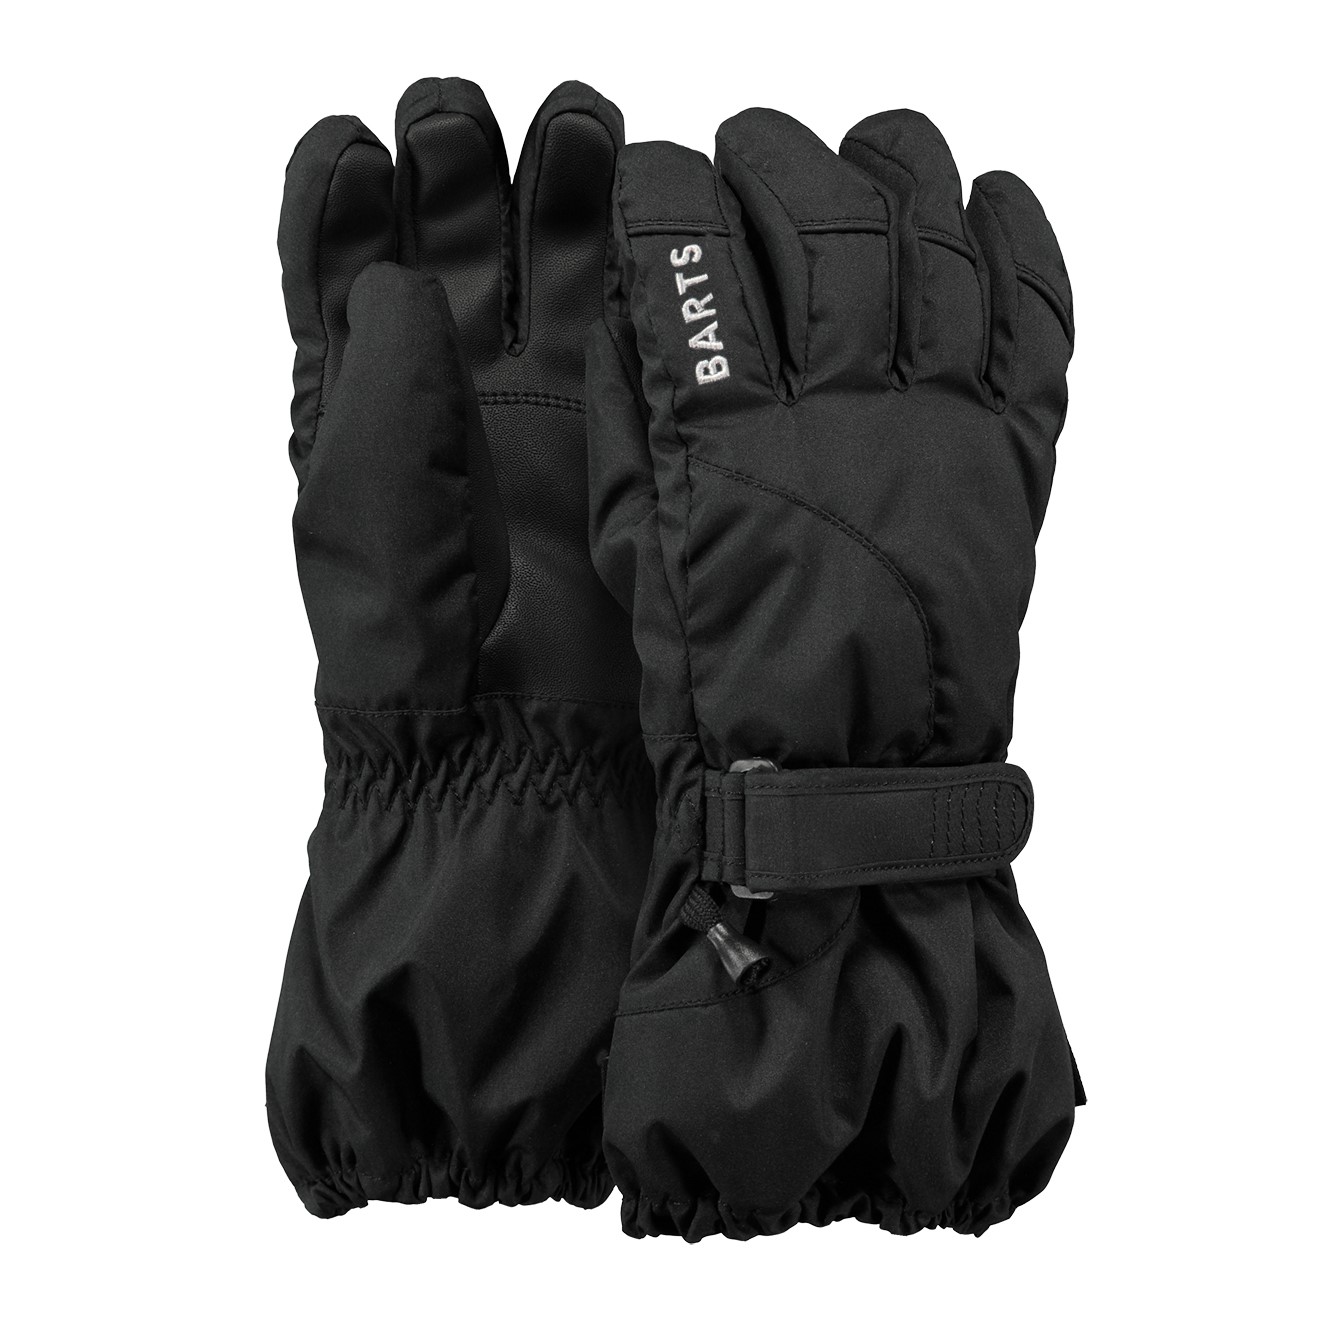 Tether Rijke man Categorie Snowboard handschoenen kopen bij Duijvestein Winterstore